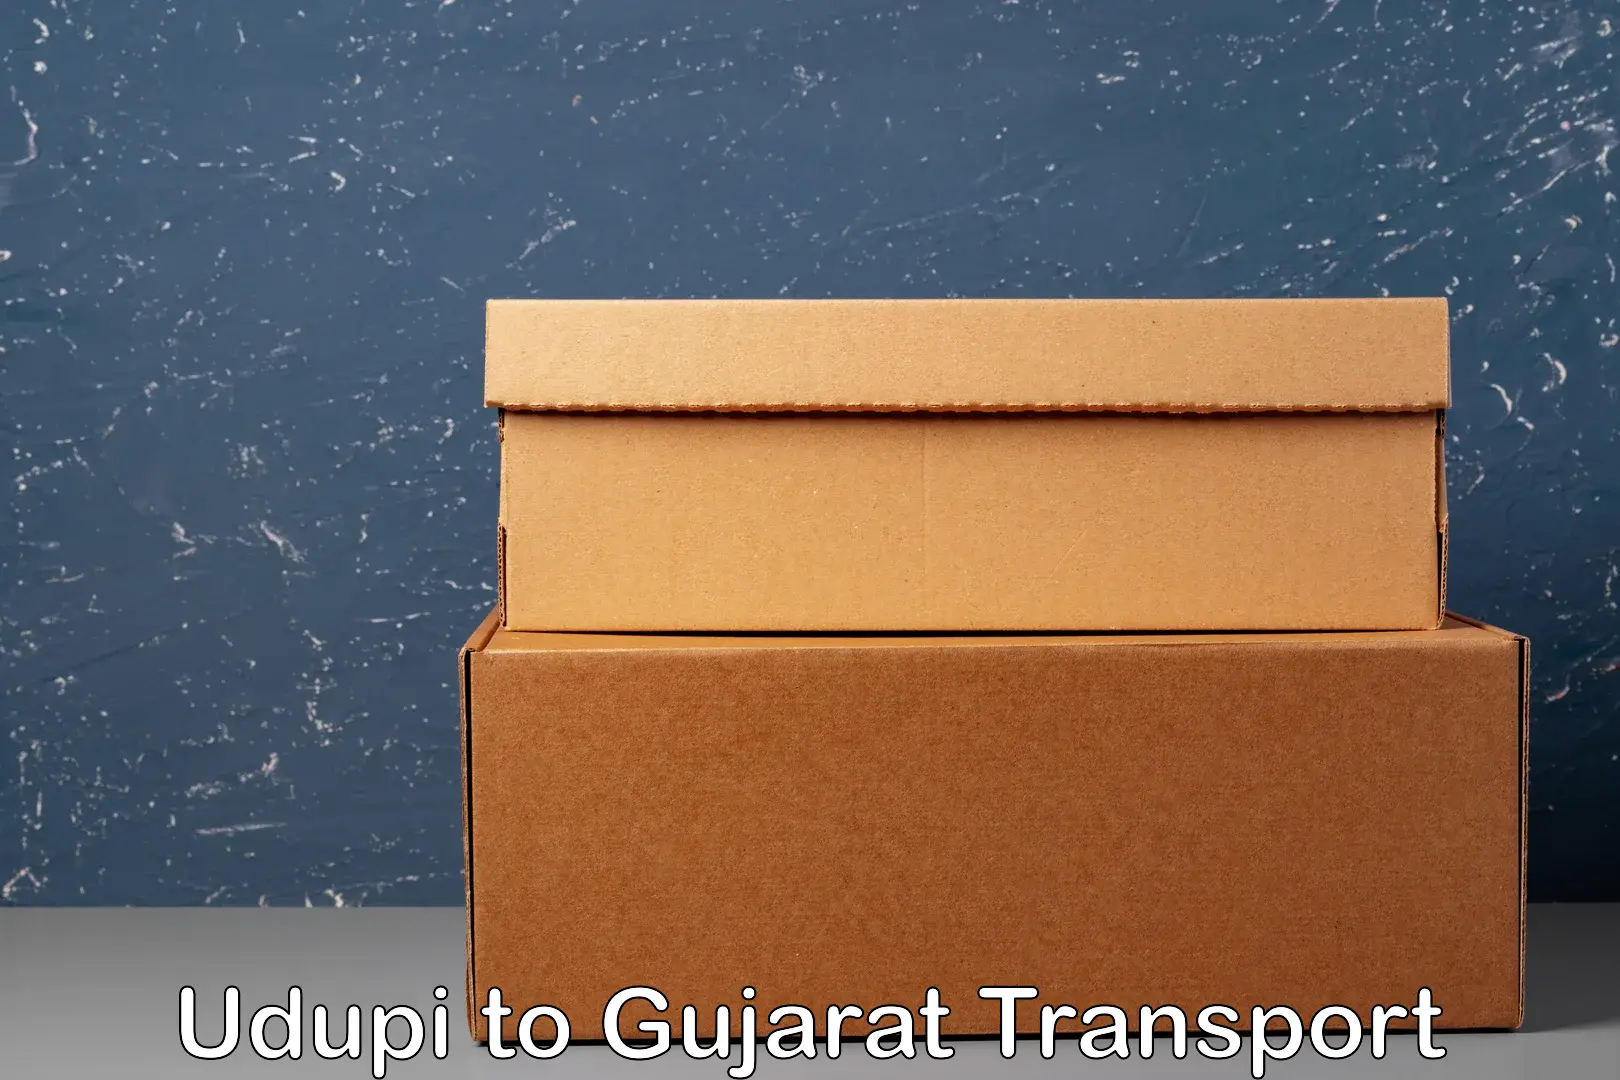 Express transport services Udupi to Gujarat